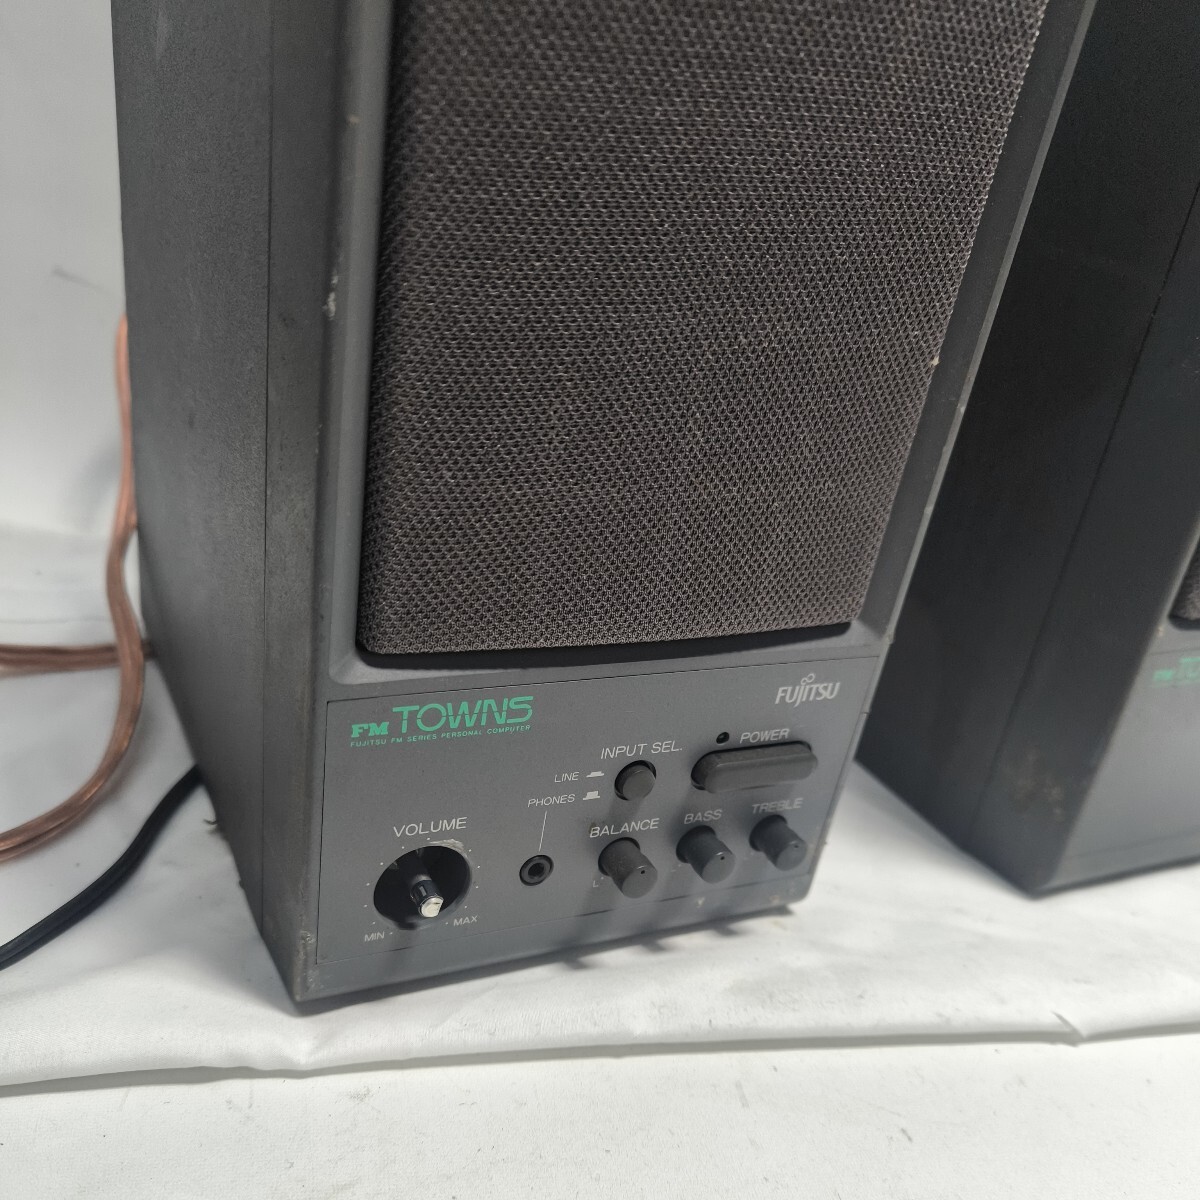 [2FJ33] рабочее состояние подтверждено Fujitsu FM TOWNS усилитель аудиосистема FMT-SP101 FUJITSU динамик внешний царапина много текущее состояние корпус лот (240501)